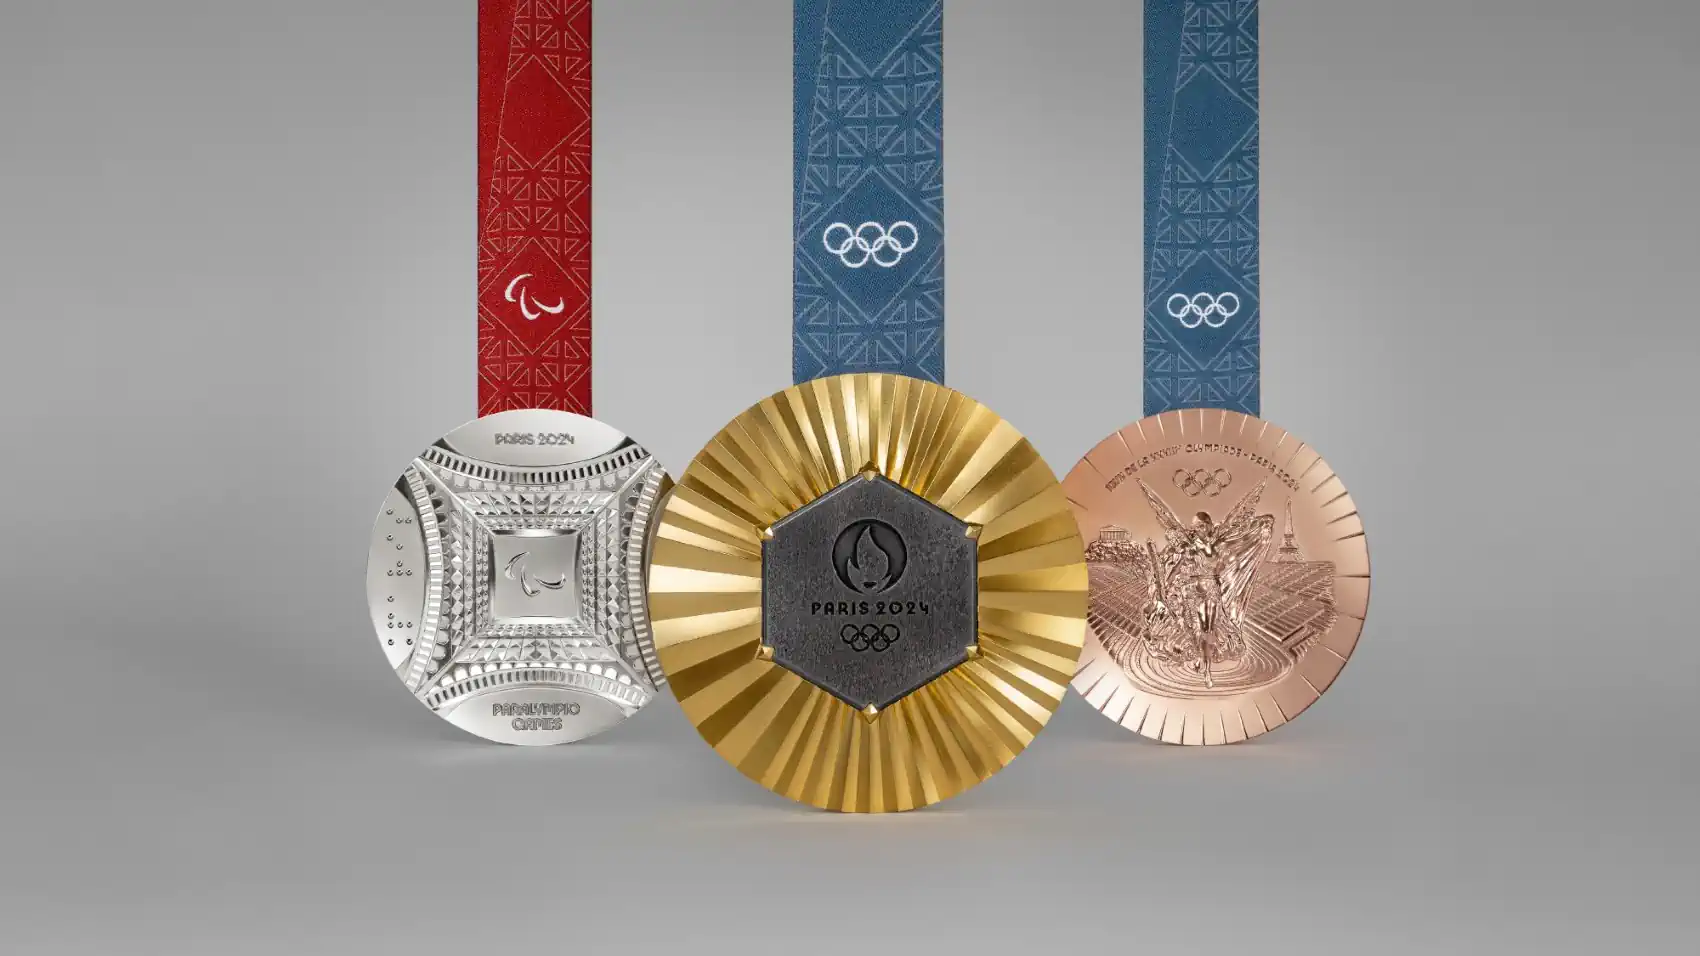 Chaumet et Paris 2024 dévoilent les médailles des Jeux Olympiques et Paralympiques